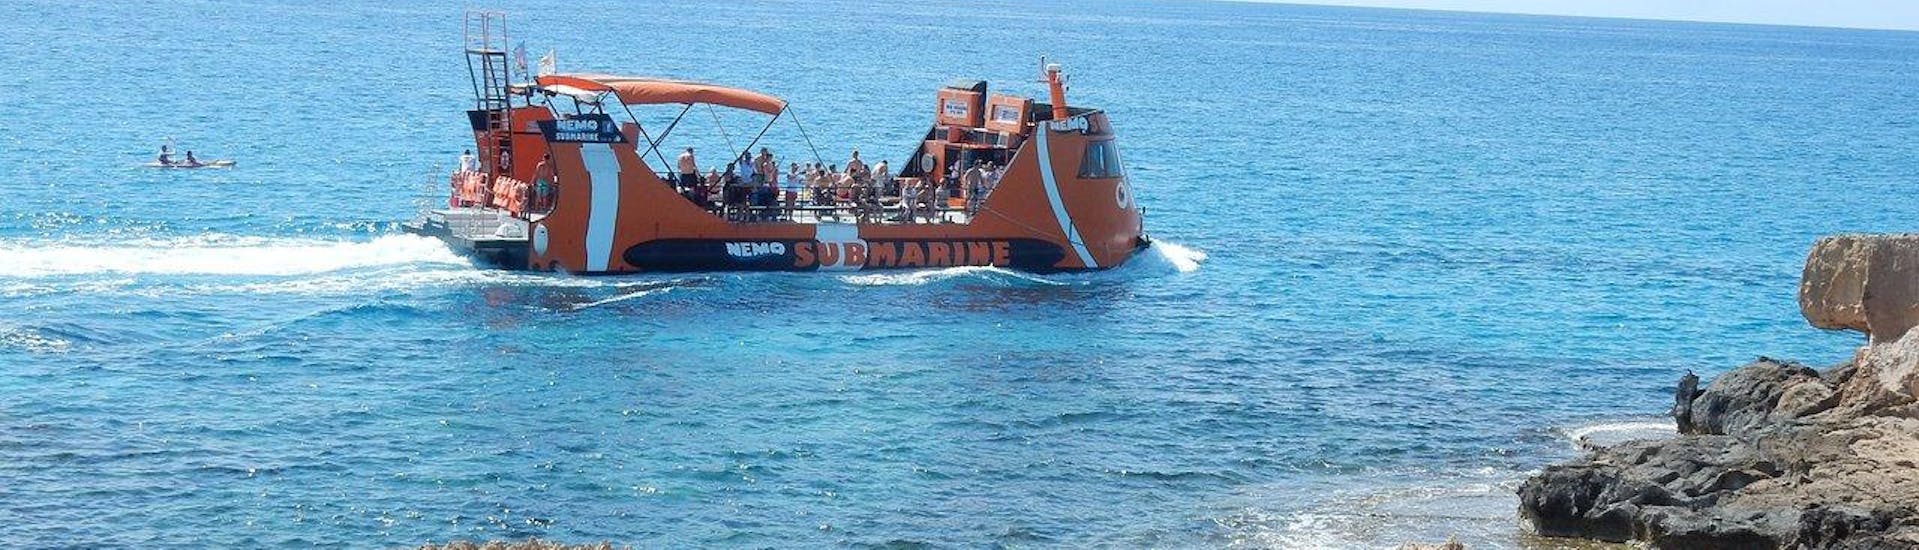 Das Semi-Submarine Nemo bei der Fahrt entlang der Küste von Ayia Napa.